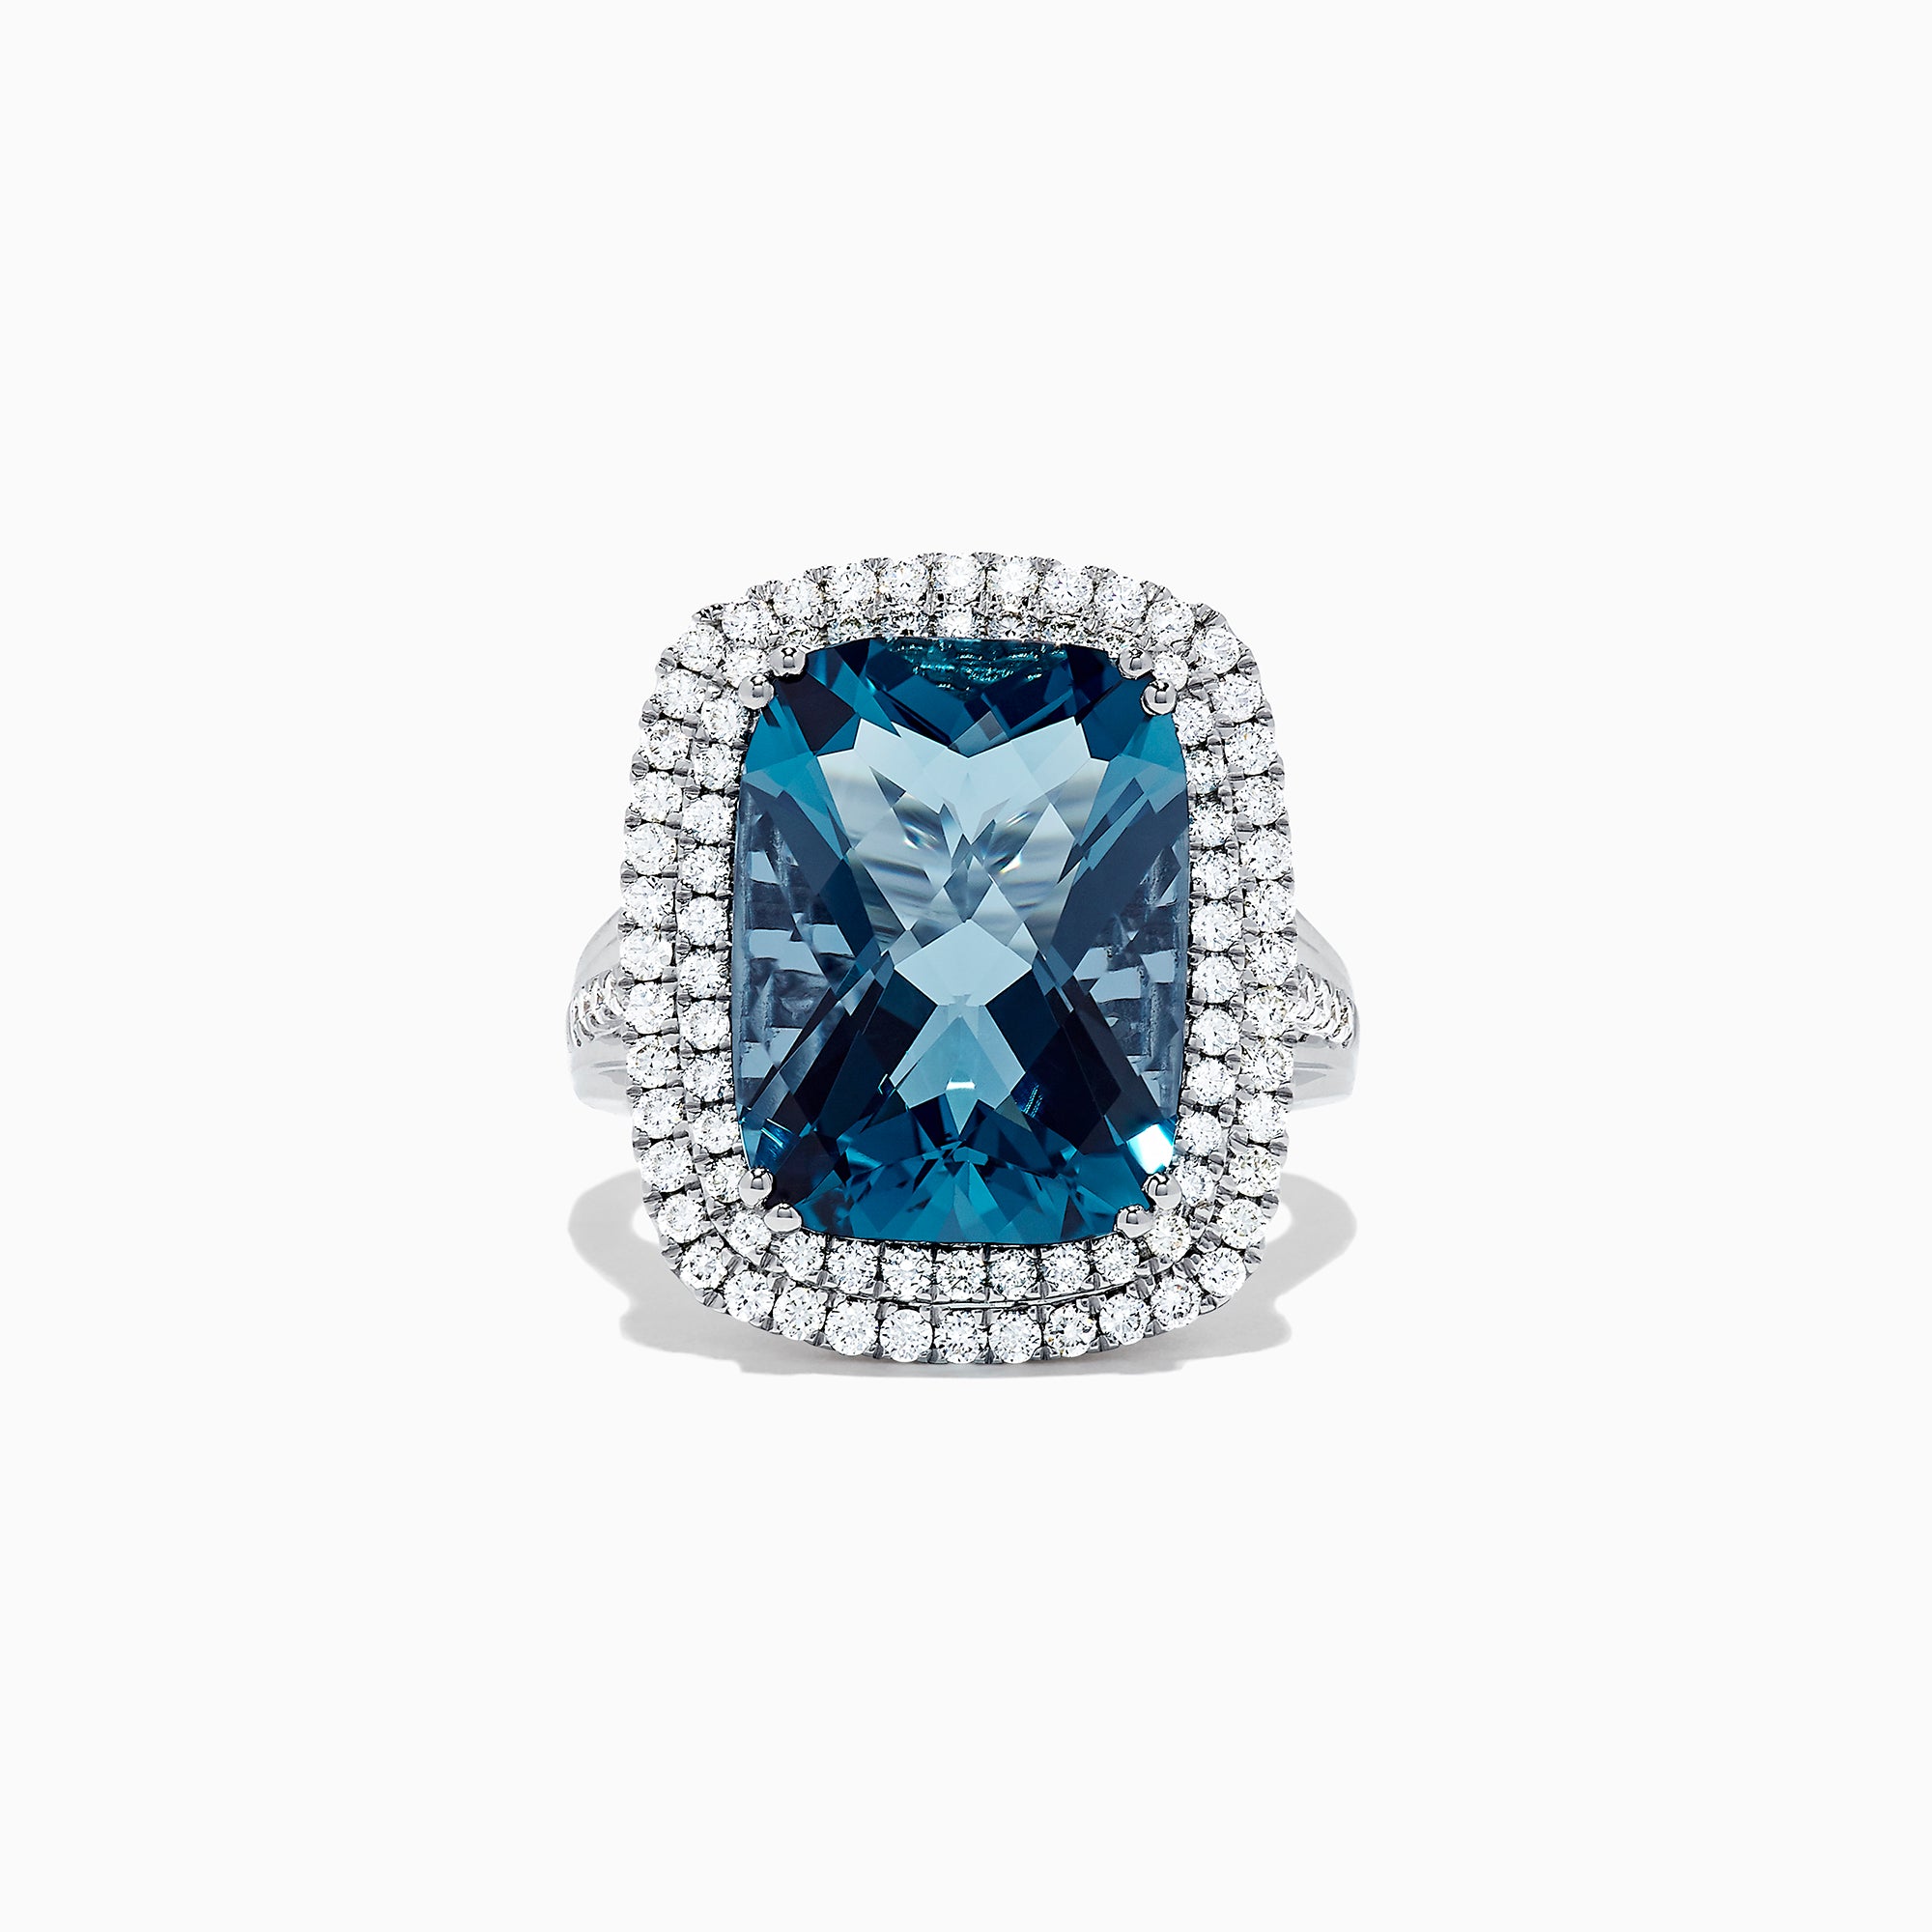 Effy Ocean Bleu 14K White Gold London Blue Topaz and Diamond Ring, 12. 